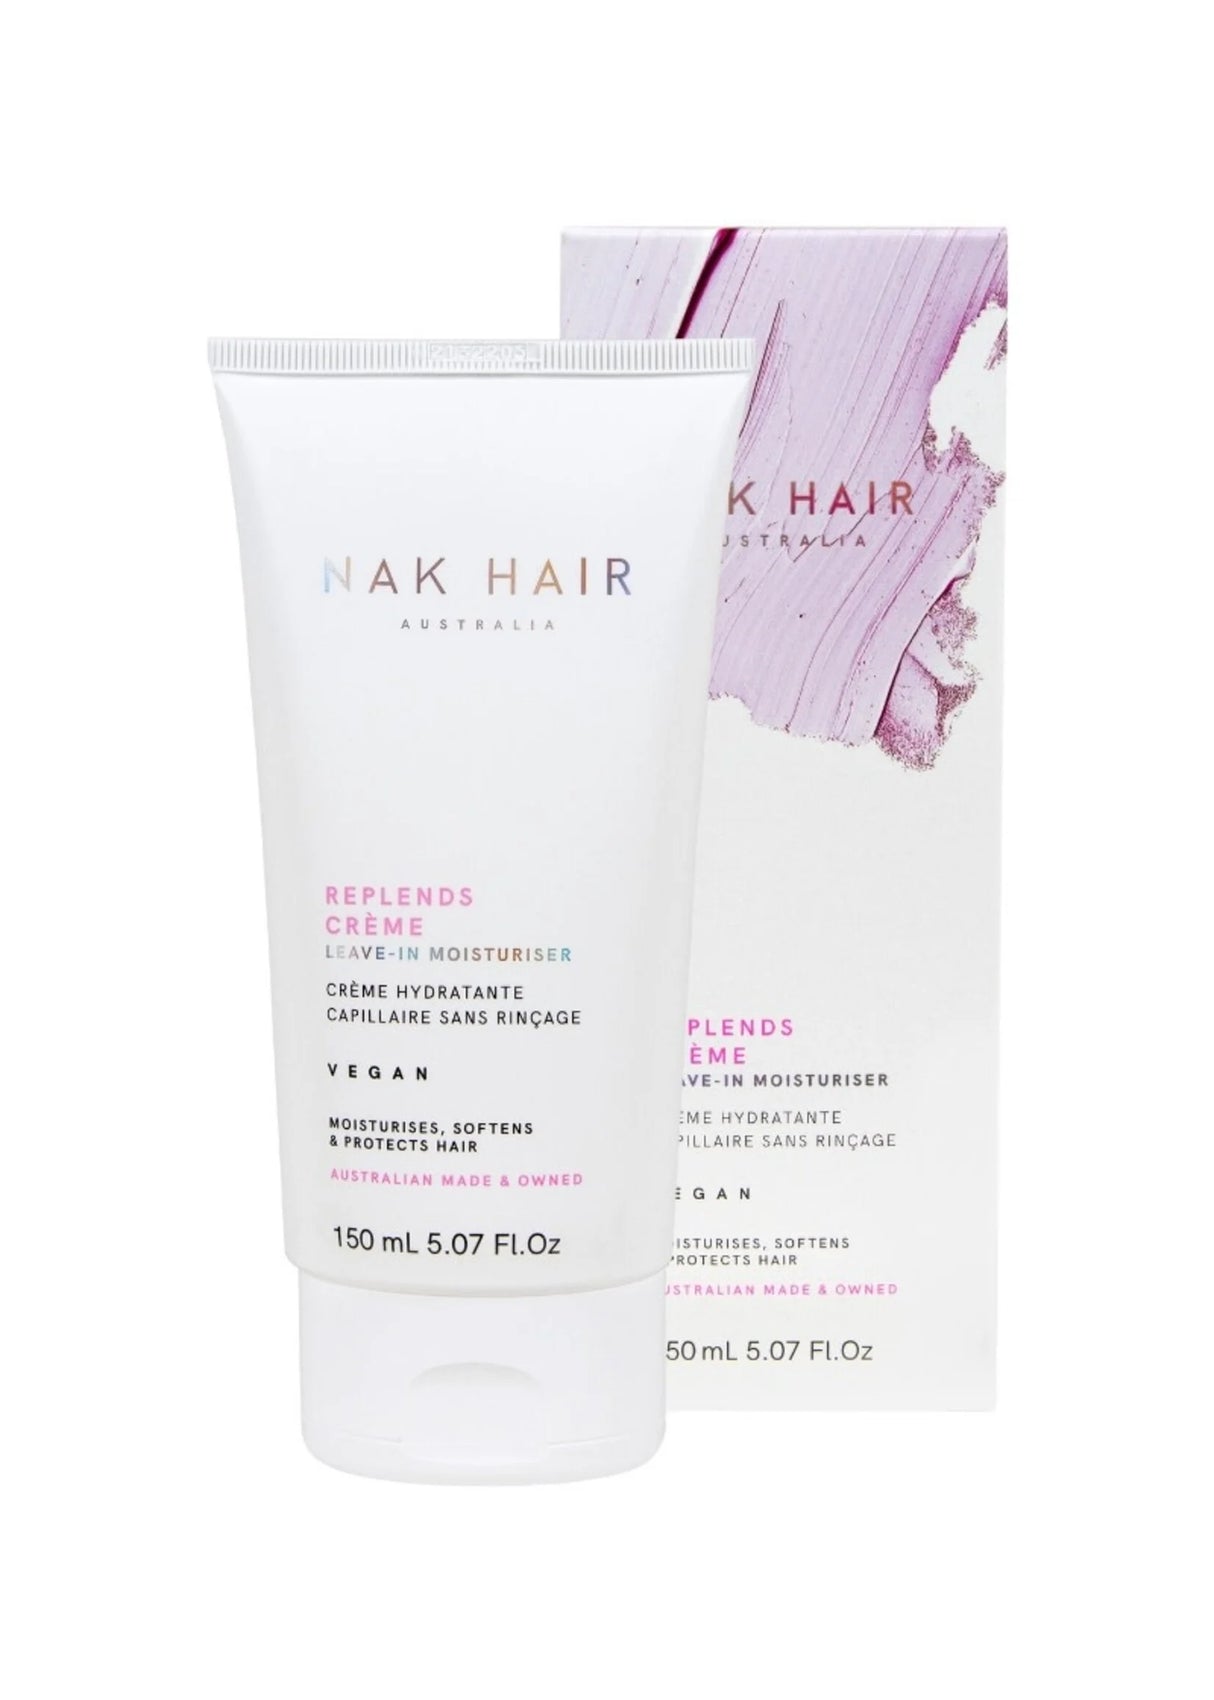 Nak Hair Replends Creme Leave in Moisturiser 150ml